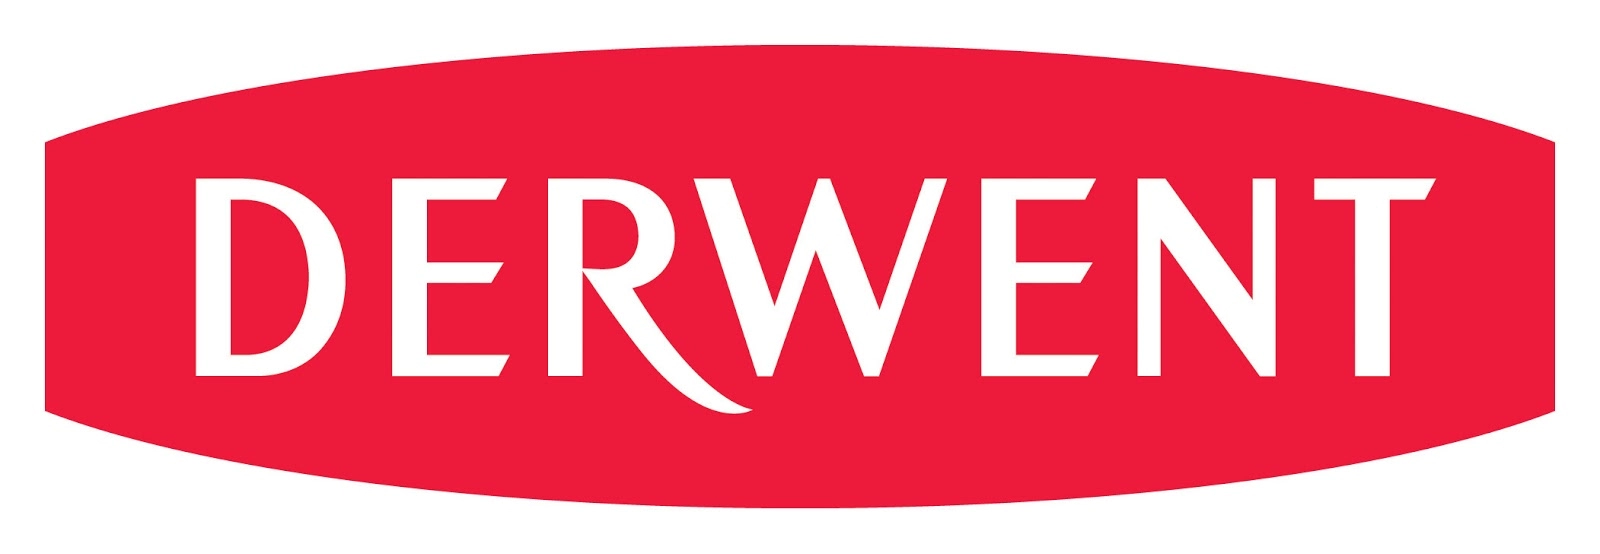 Derwent logo